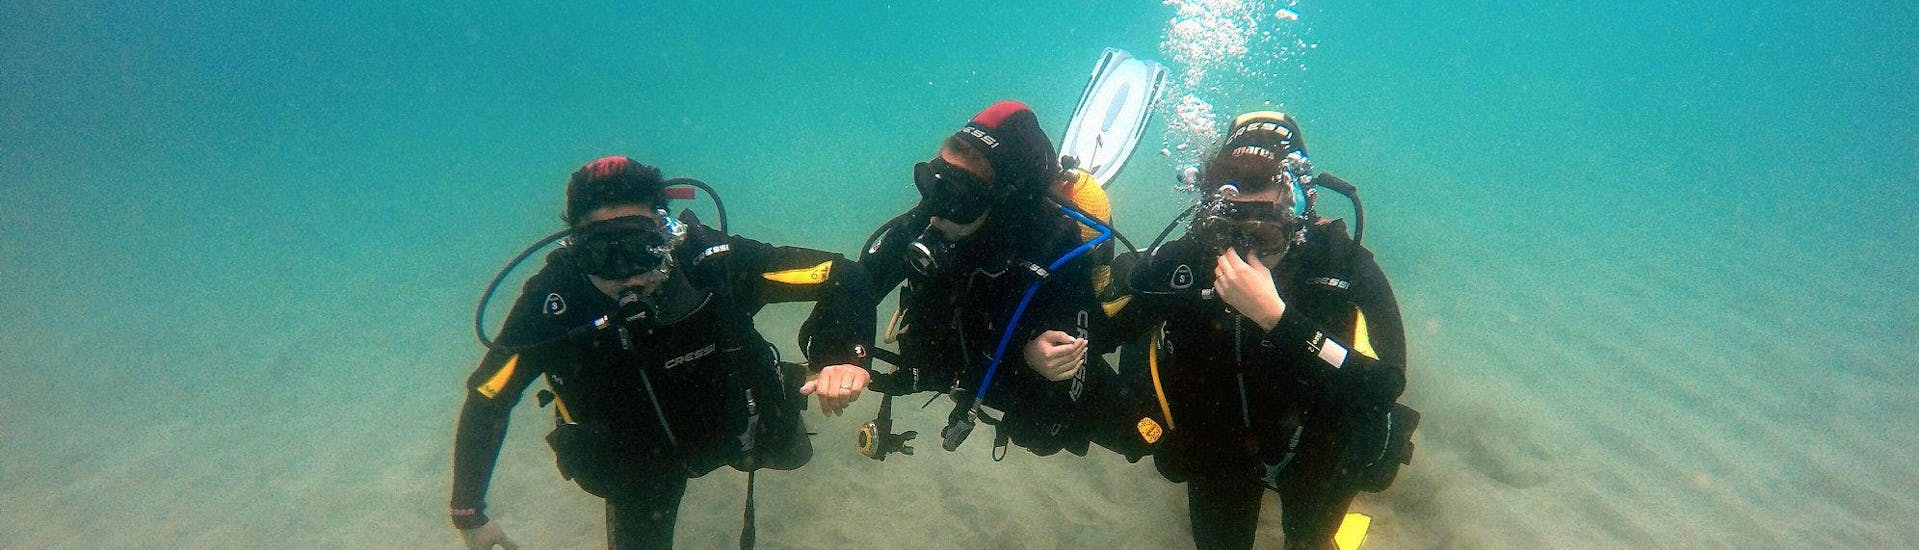 Curso de Buceo PADI Open Water Diver en Costa Calma.